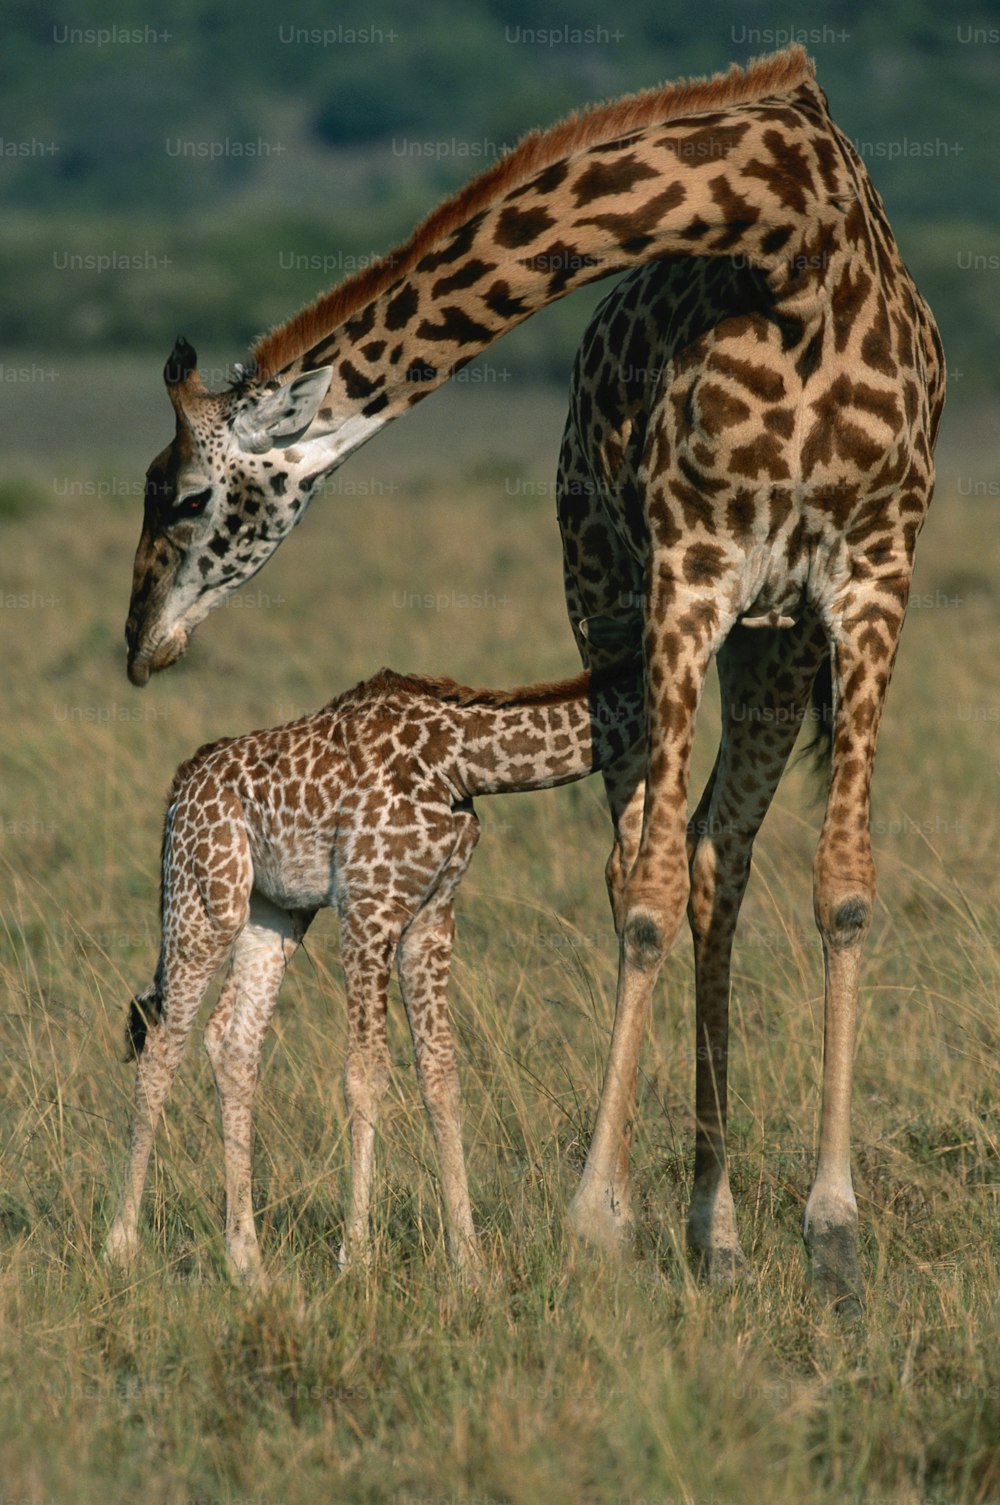 Un cucciolo di giraffa in piedi accanto a una giraffa adulta